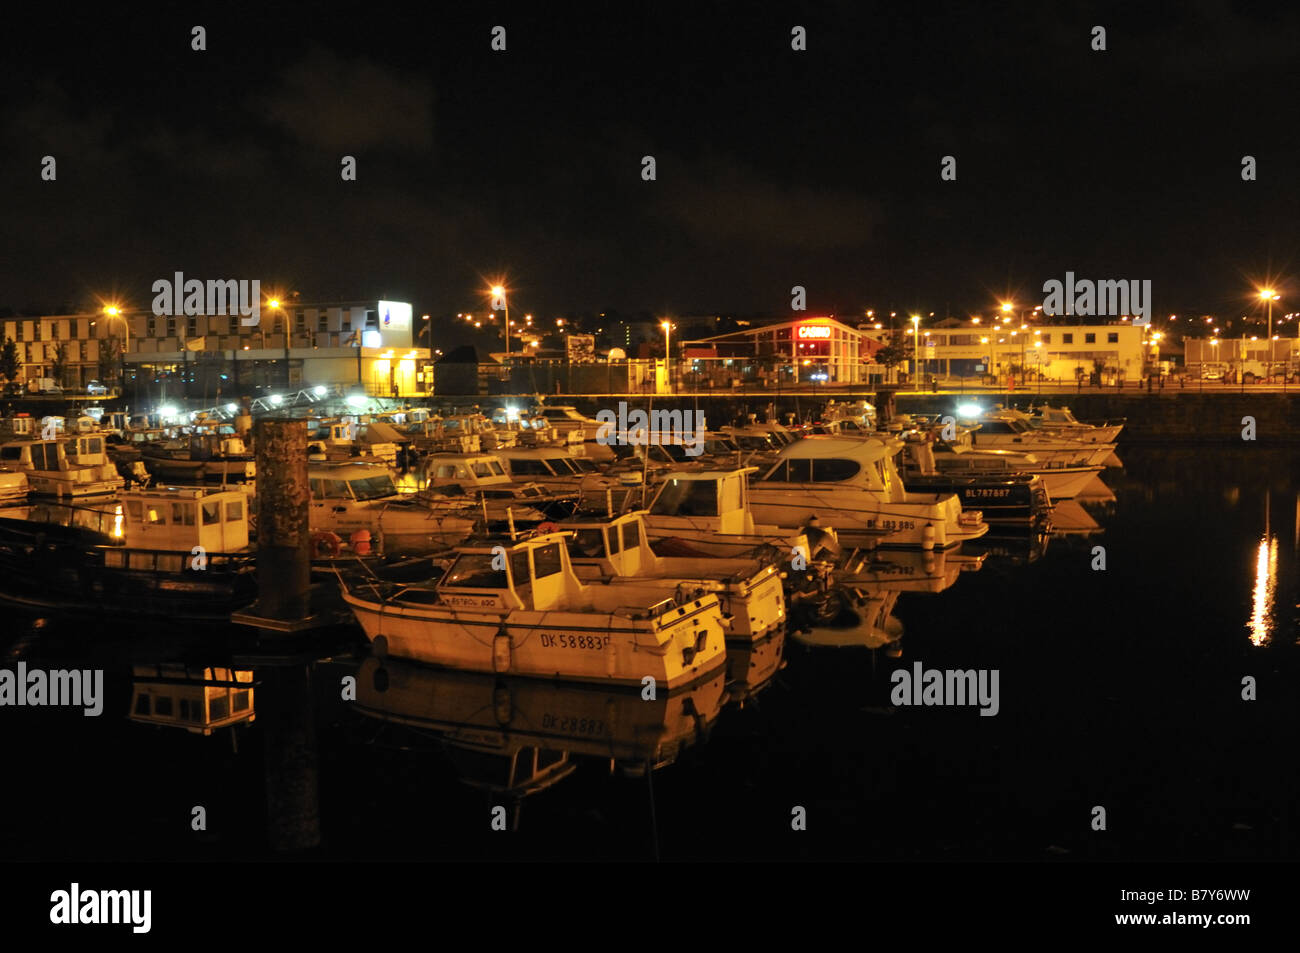 Boulogne-sur-Mer marina at night, France. Stock Photo